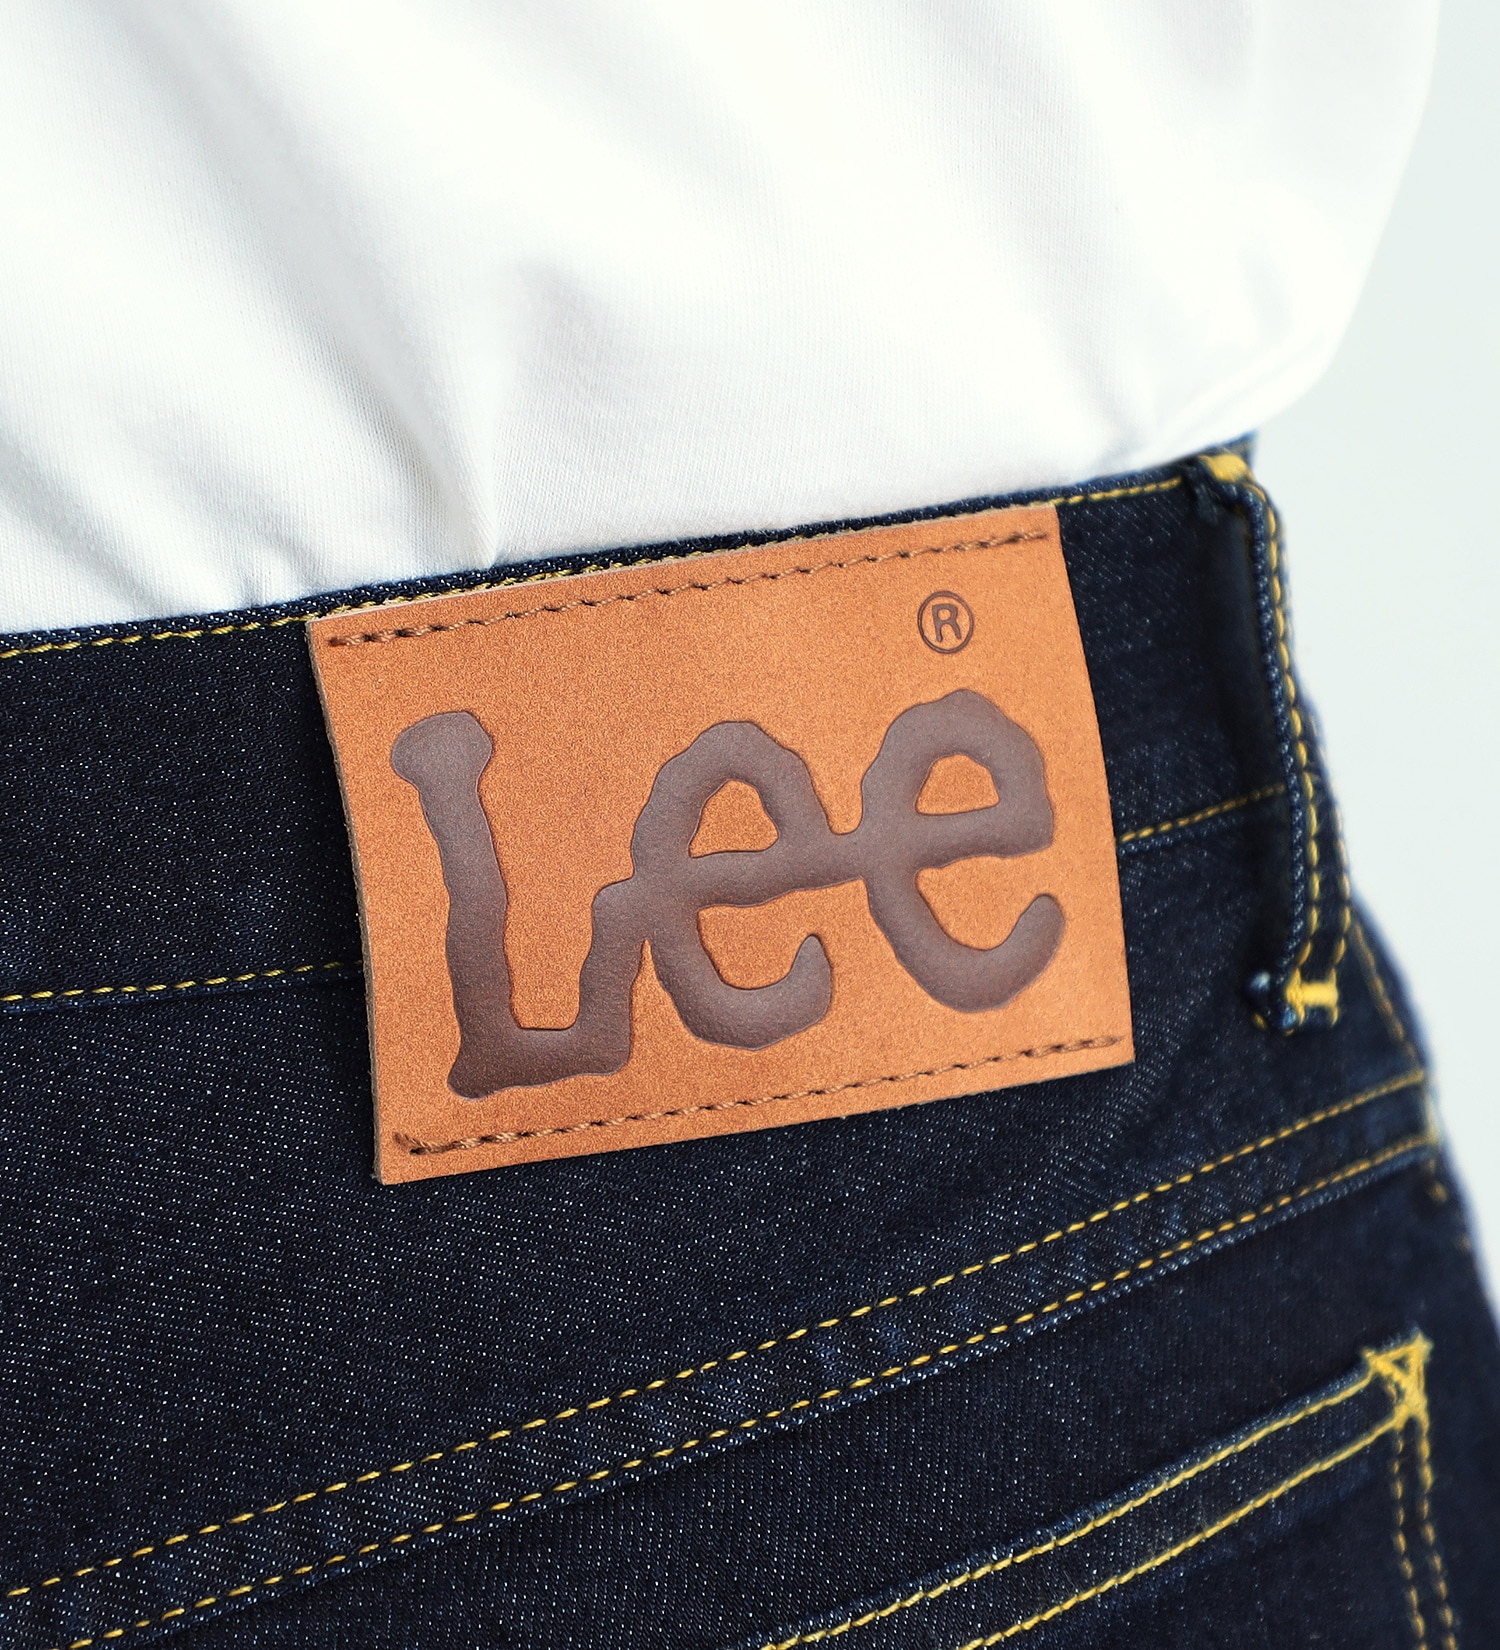 Lee(リー)の【GW SALE】【涼・COOL】ドライタッチで涼しく快適AMERICAN STANDARD 201 ストレート|パンツ/デニムパンツ/メンズ|インディゴブルー